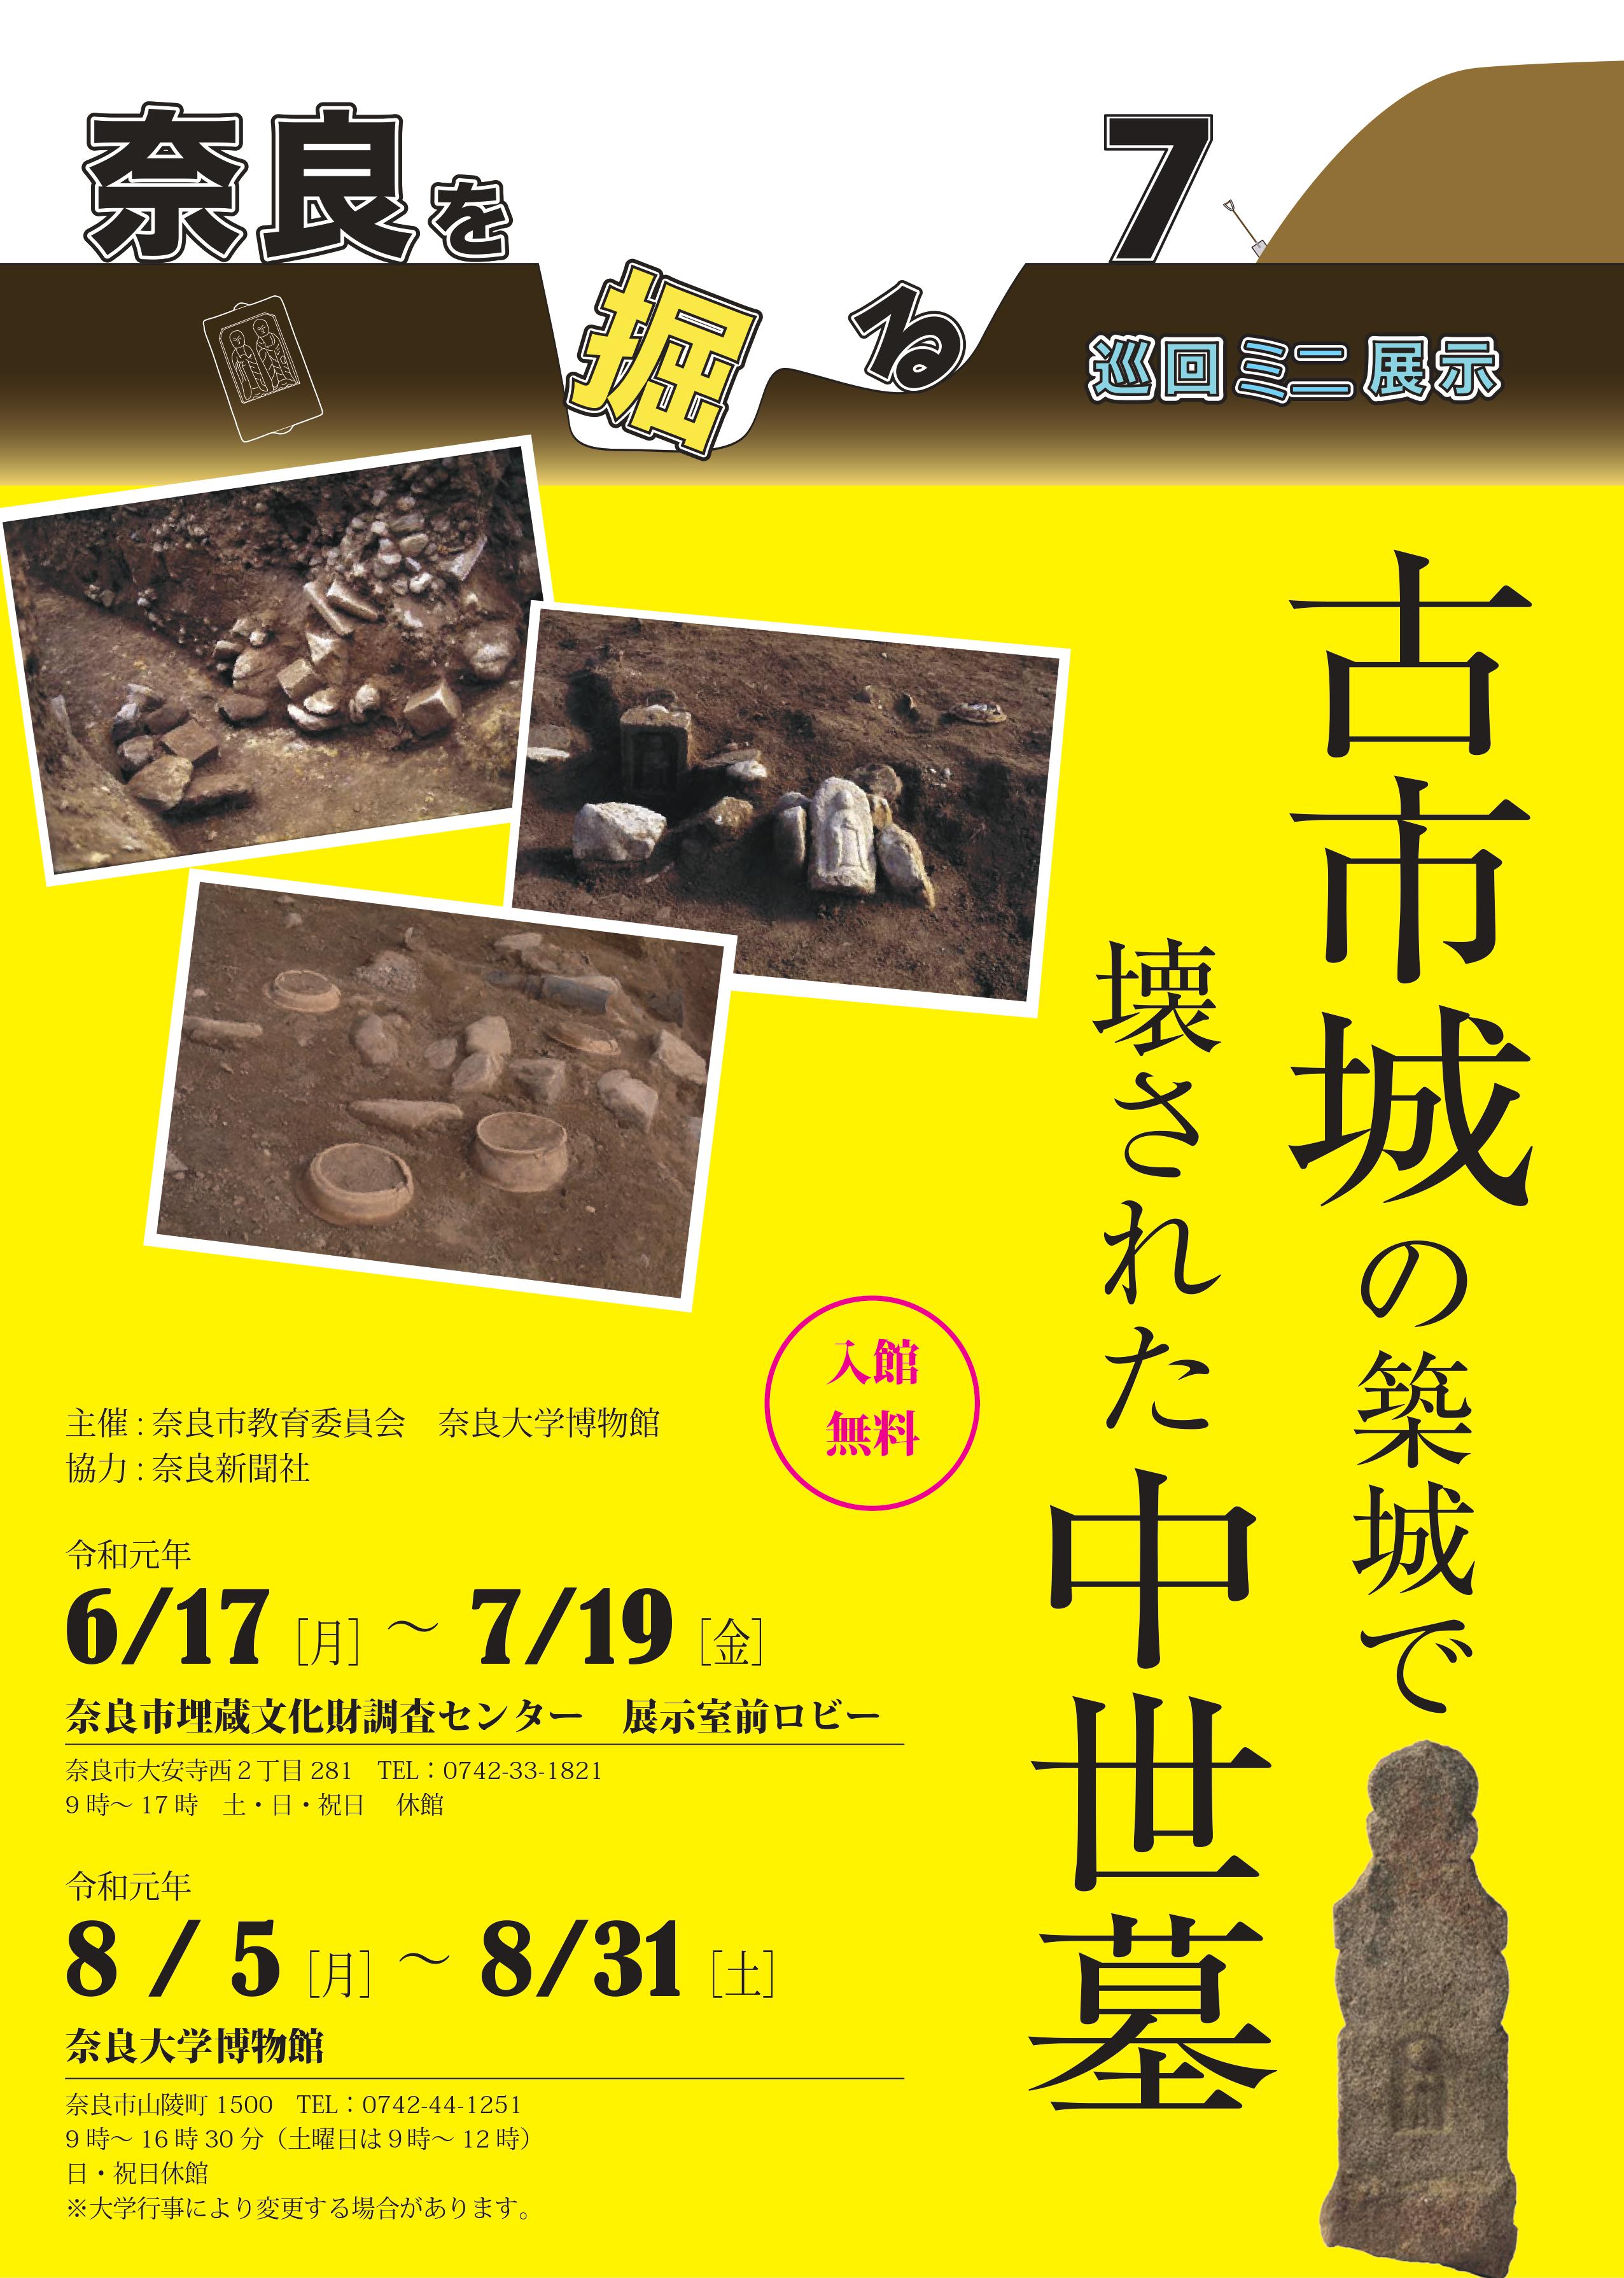 令和元年度巡回ミニ展示「奈良を掘る7」の開催について(令和元年6月3日発表)の画像1